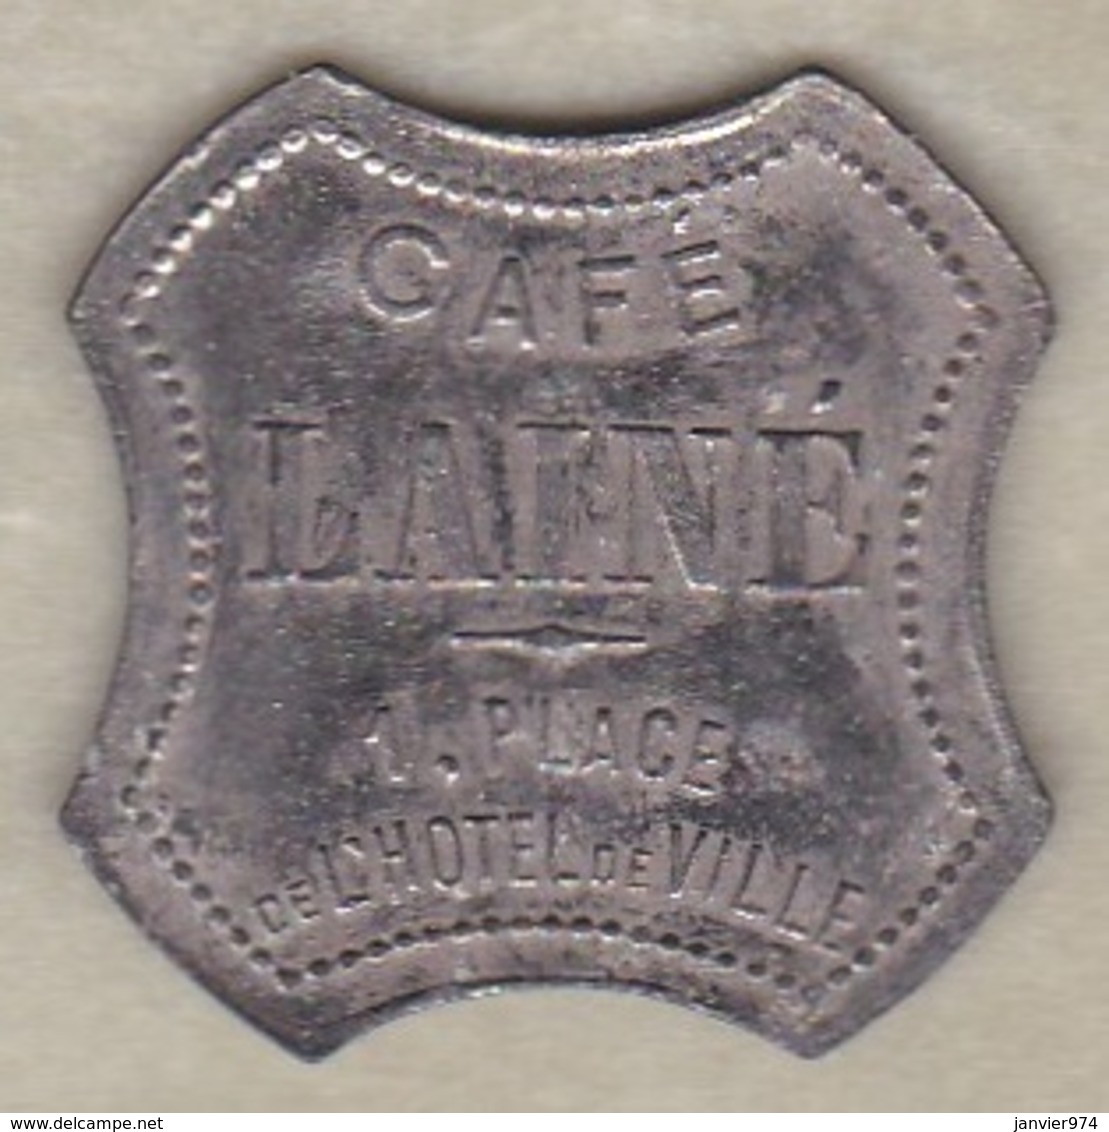 42 - LOIRE. Saint-Etienne, Café Lainé , 15 Centimes , Zinc Nickelé Octogonal - Monétaires / De Nécessité